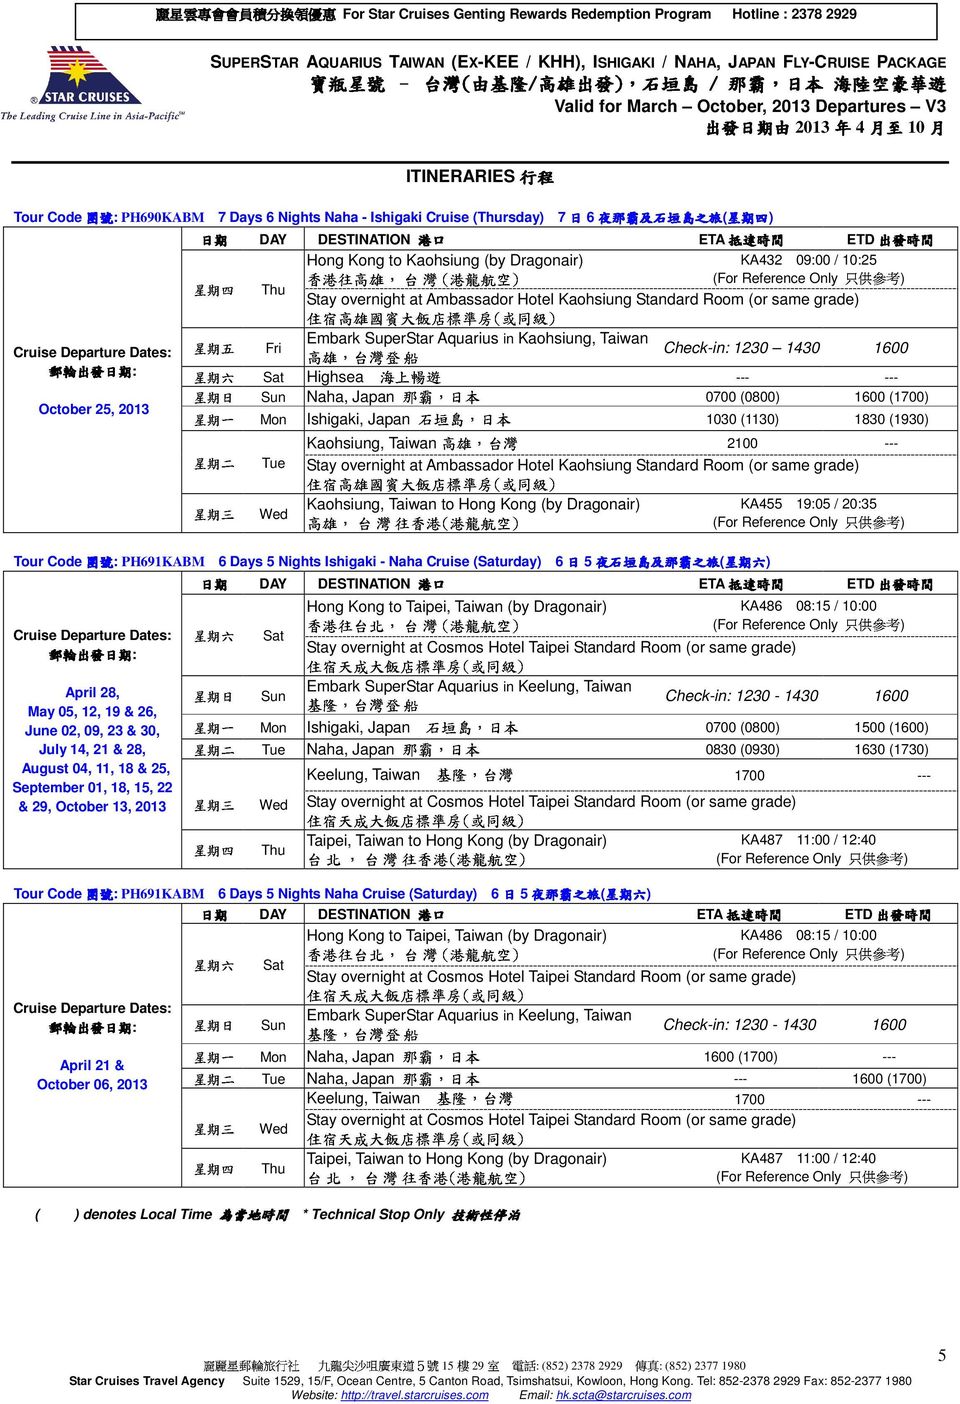 Cruise (rsday) 7 6 ) 住 宿 高 雄 國 賓 大 飯 店 標 準 房 ( 或 同 級 ) Hong Kong to Kaohsiung (by Dragonair) KA432 0900 / 1025 五 六 高 雄, 台 灣 海 登 上 船 暢 遊 Stay overnight at Ambassador Hotel Kaohsiung Standard Room (or